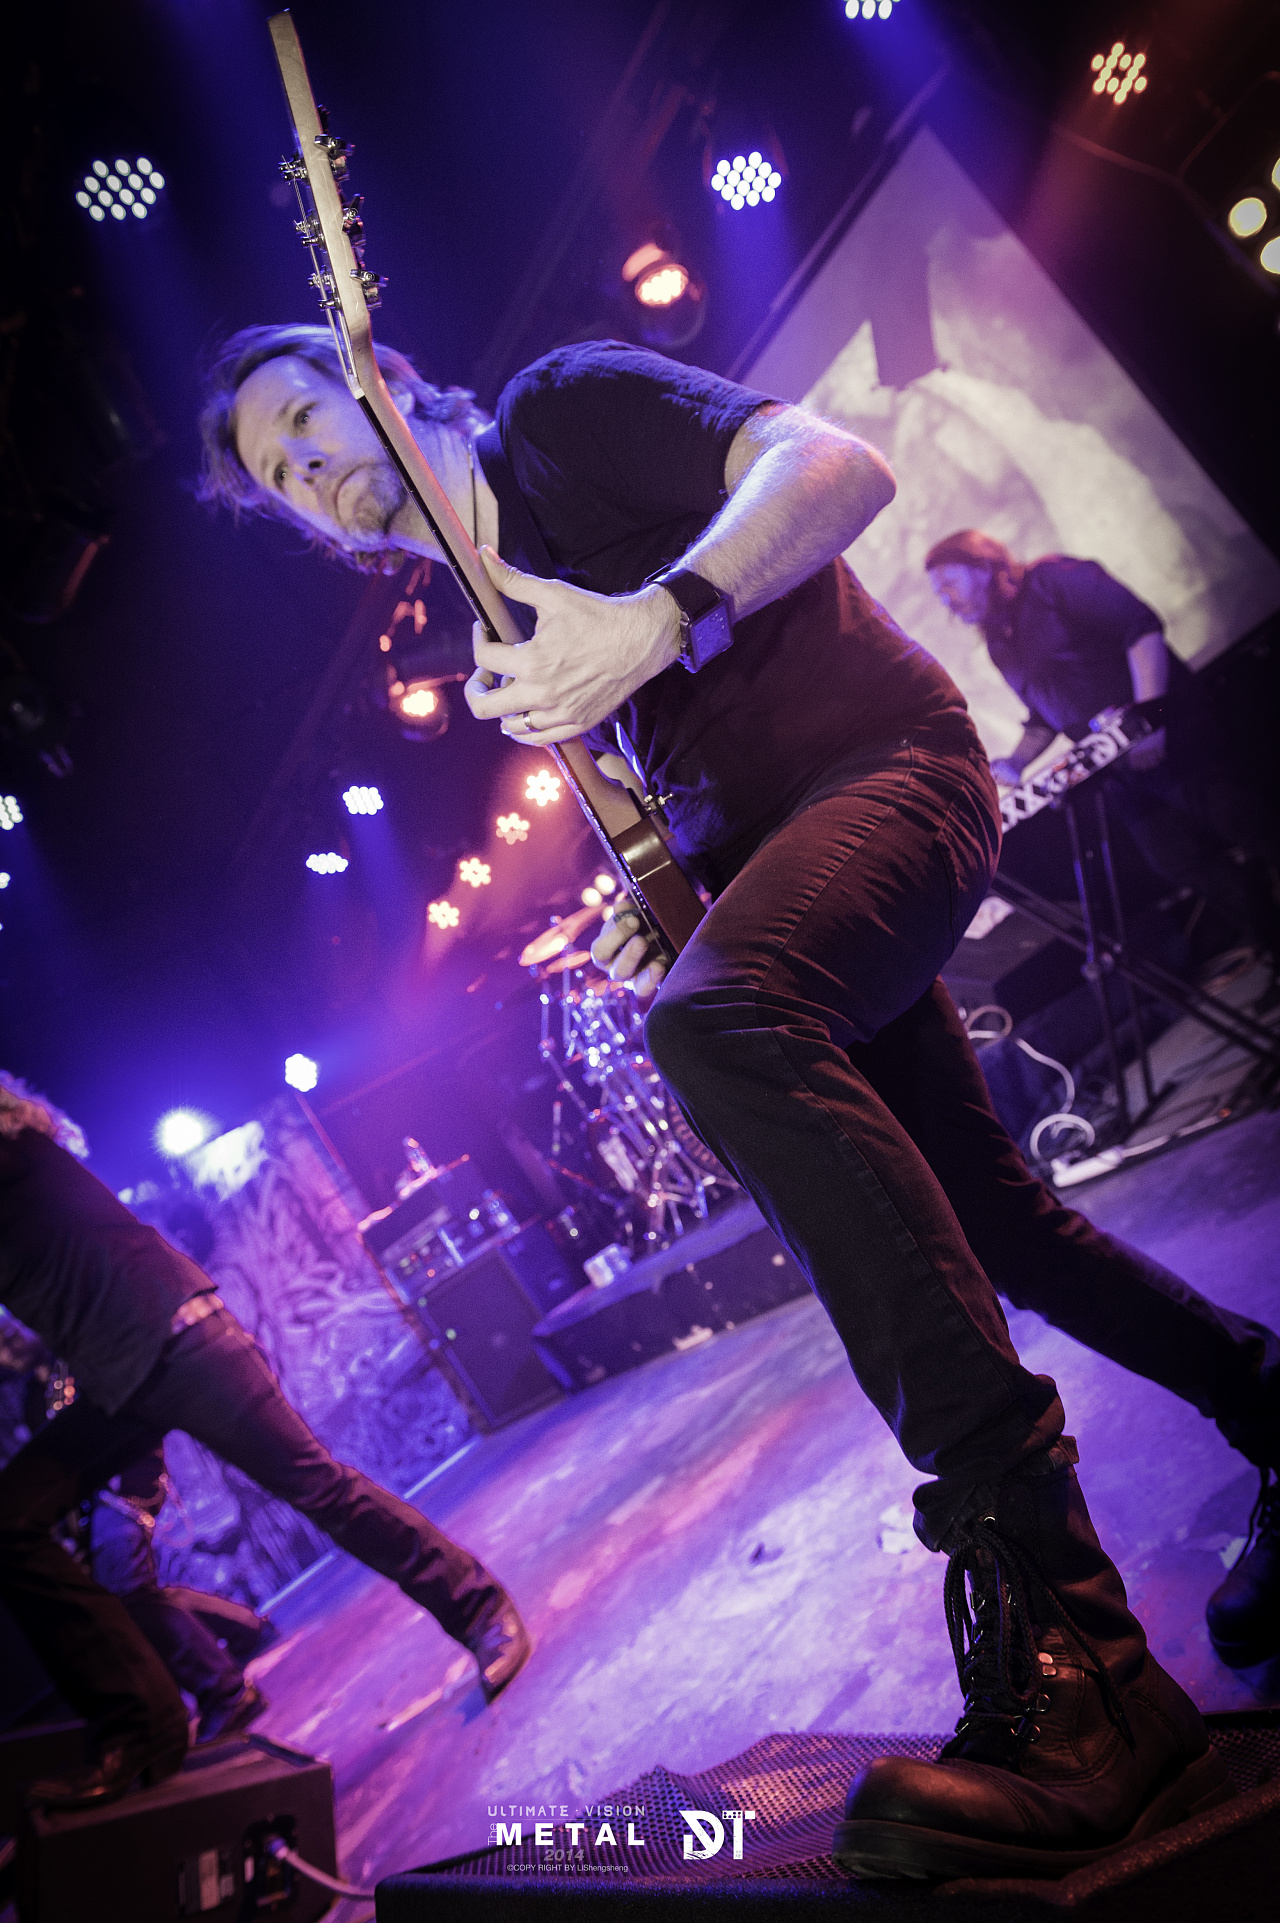 瑞典旋律死亡金属乐队 darktranquillity 2014年中国巡演北京站现场